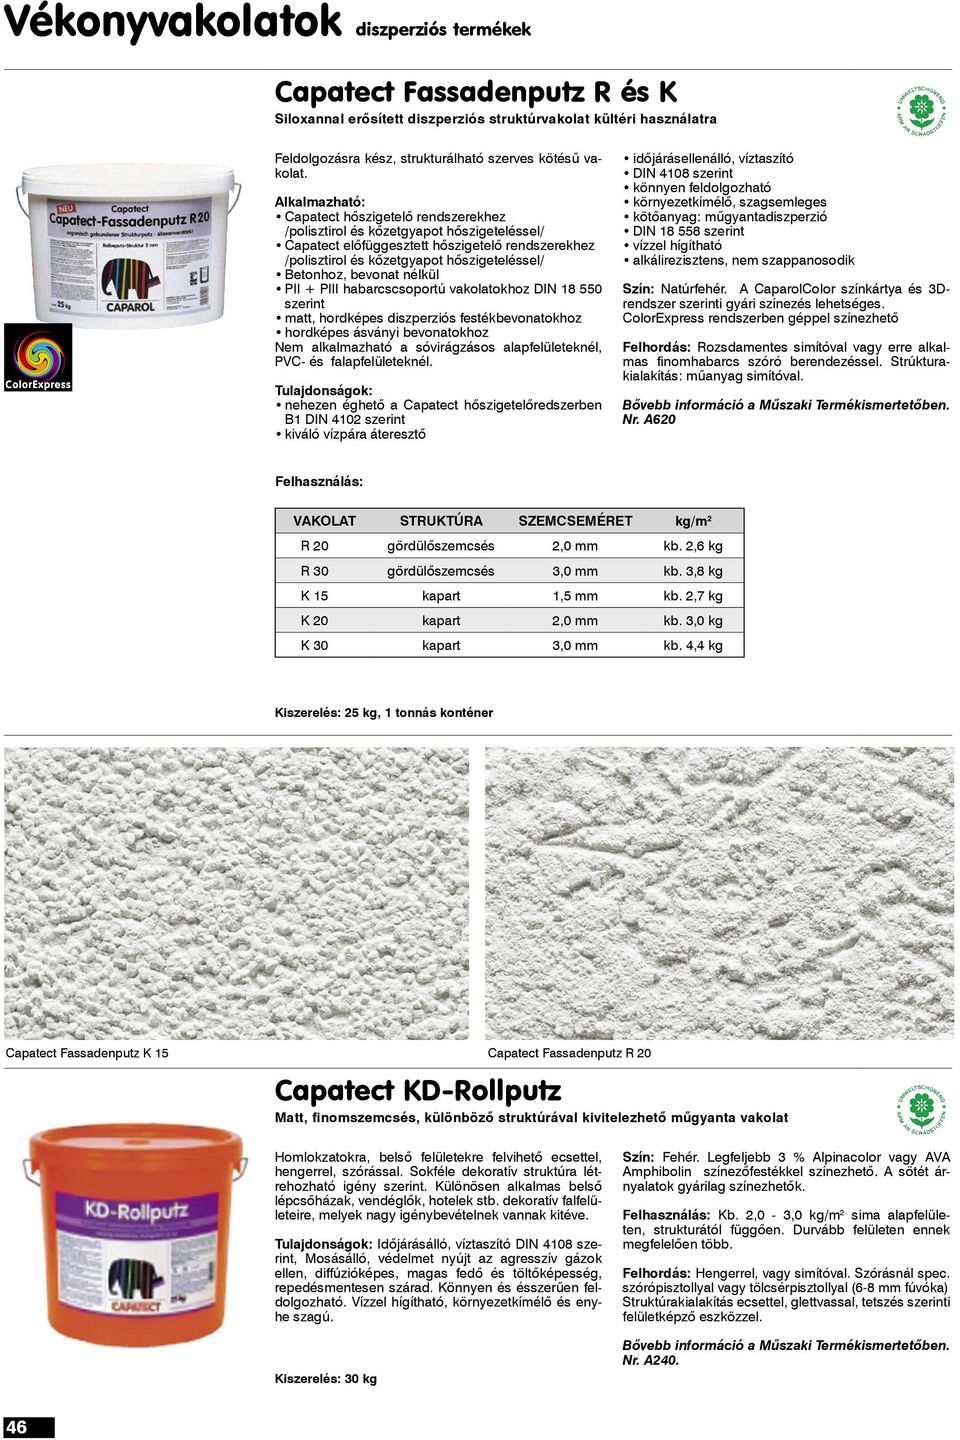 bevonat nélkül PII + PIII habarcscsoportú vakolatokhoz DIN 18 550 szerint matt, hordképes diszperziós festékbevonatokhoz hordképes ásványi bevonatokhoz Nem alkalmazható a sóvirágzásos